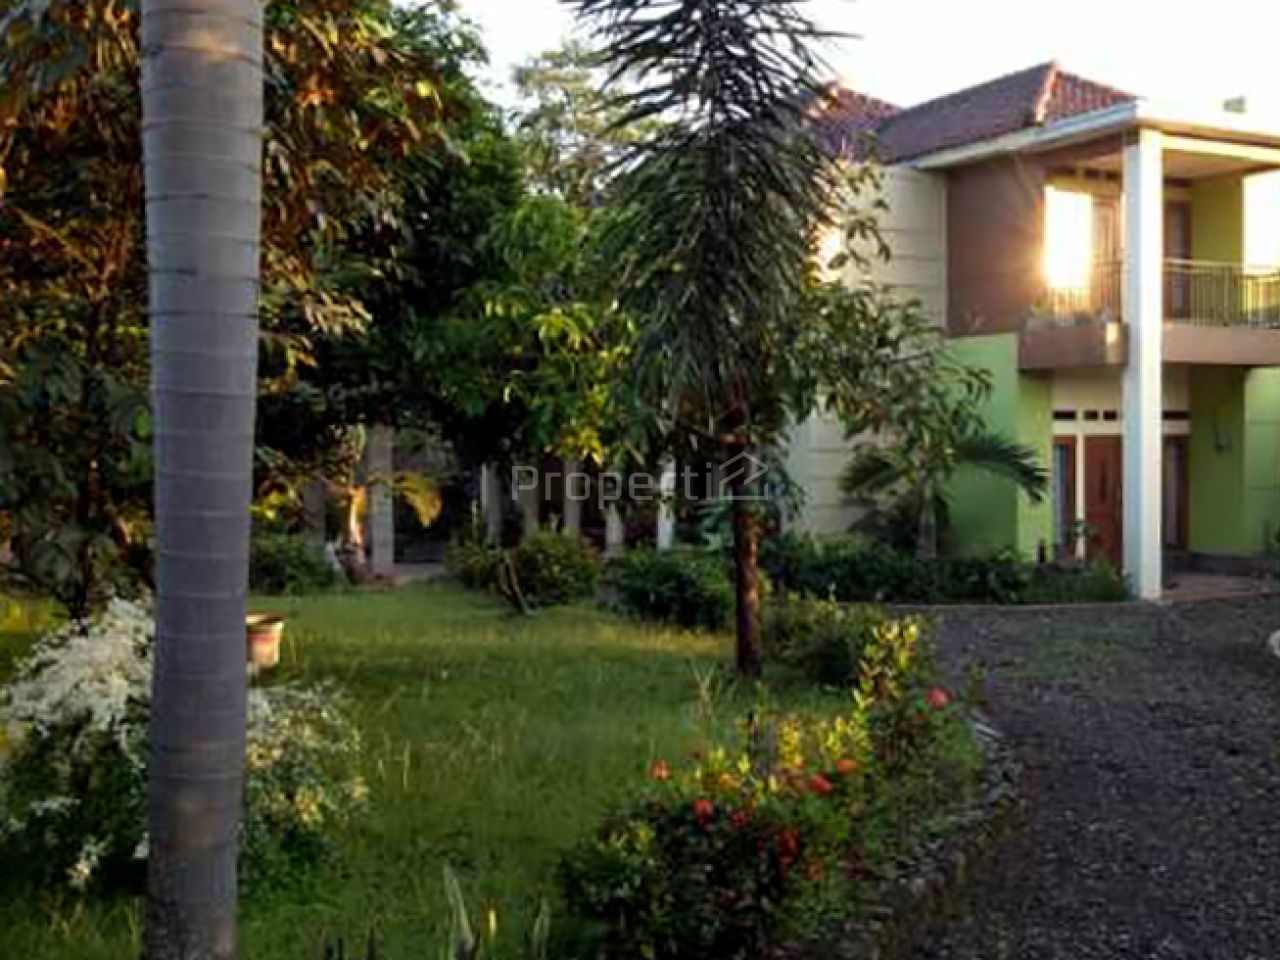 2-Storey Villa with Natural Environment in Bogor, Jawa Barat